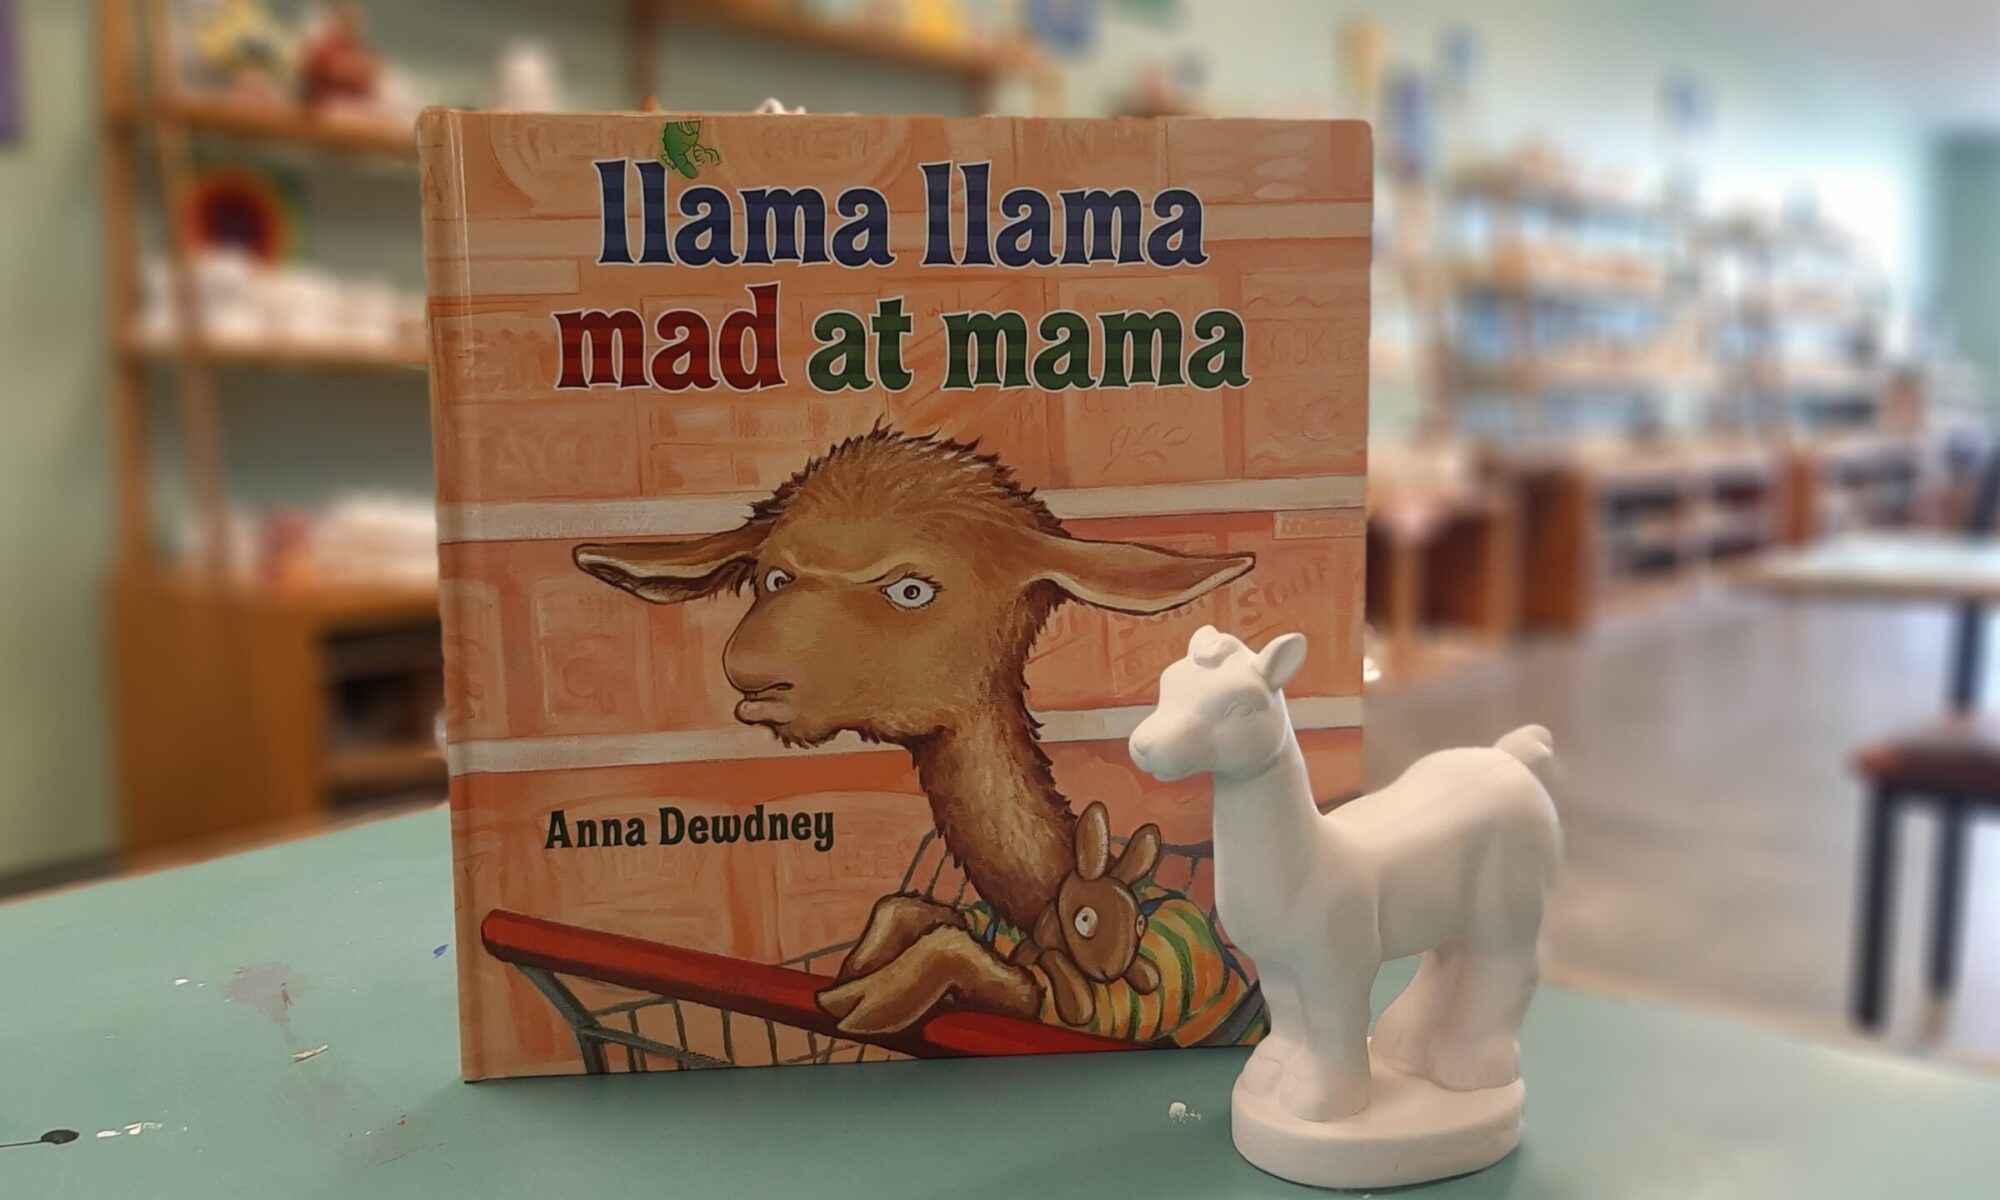 Story Time - Llama Llama Mad at Momma